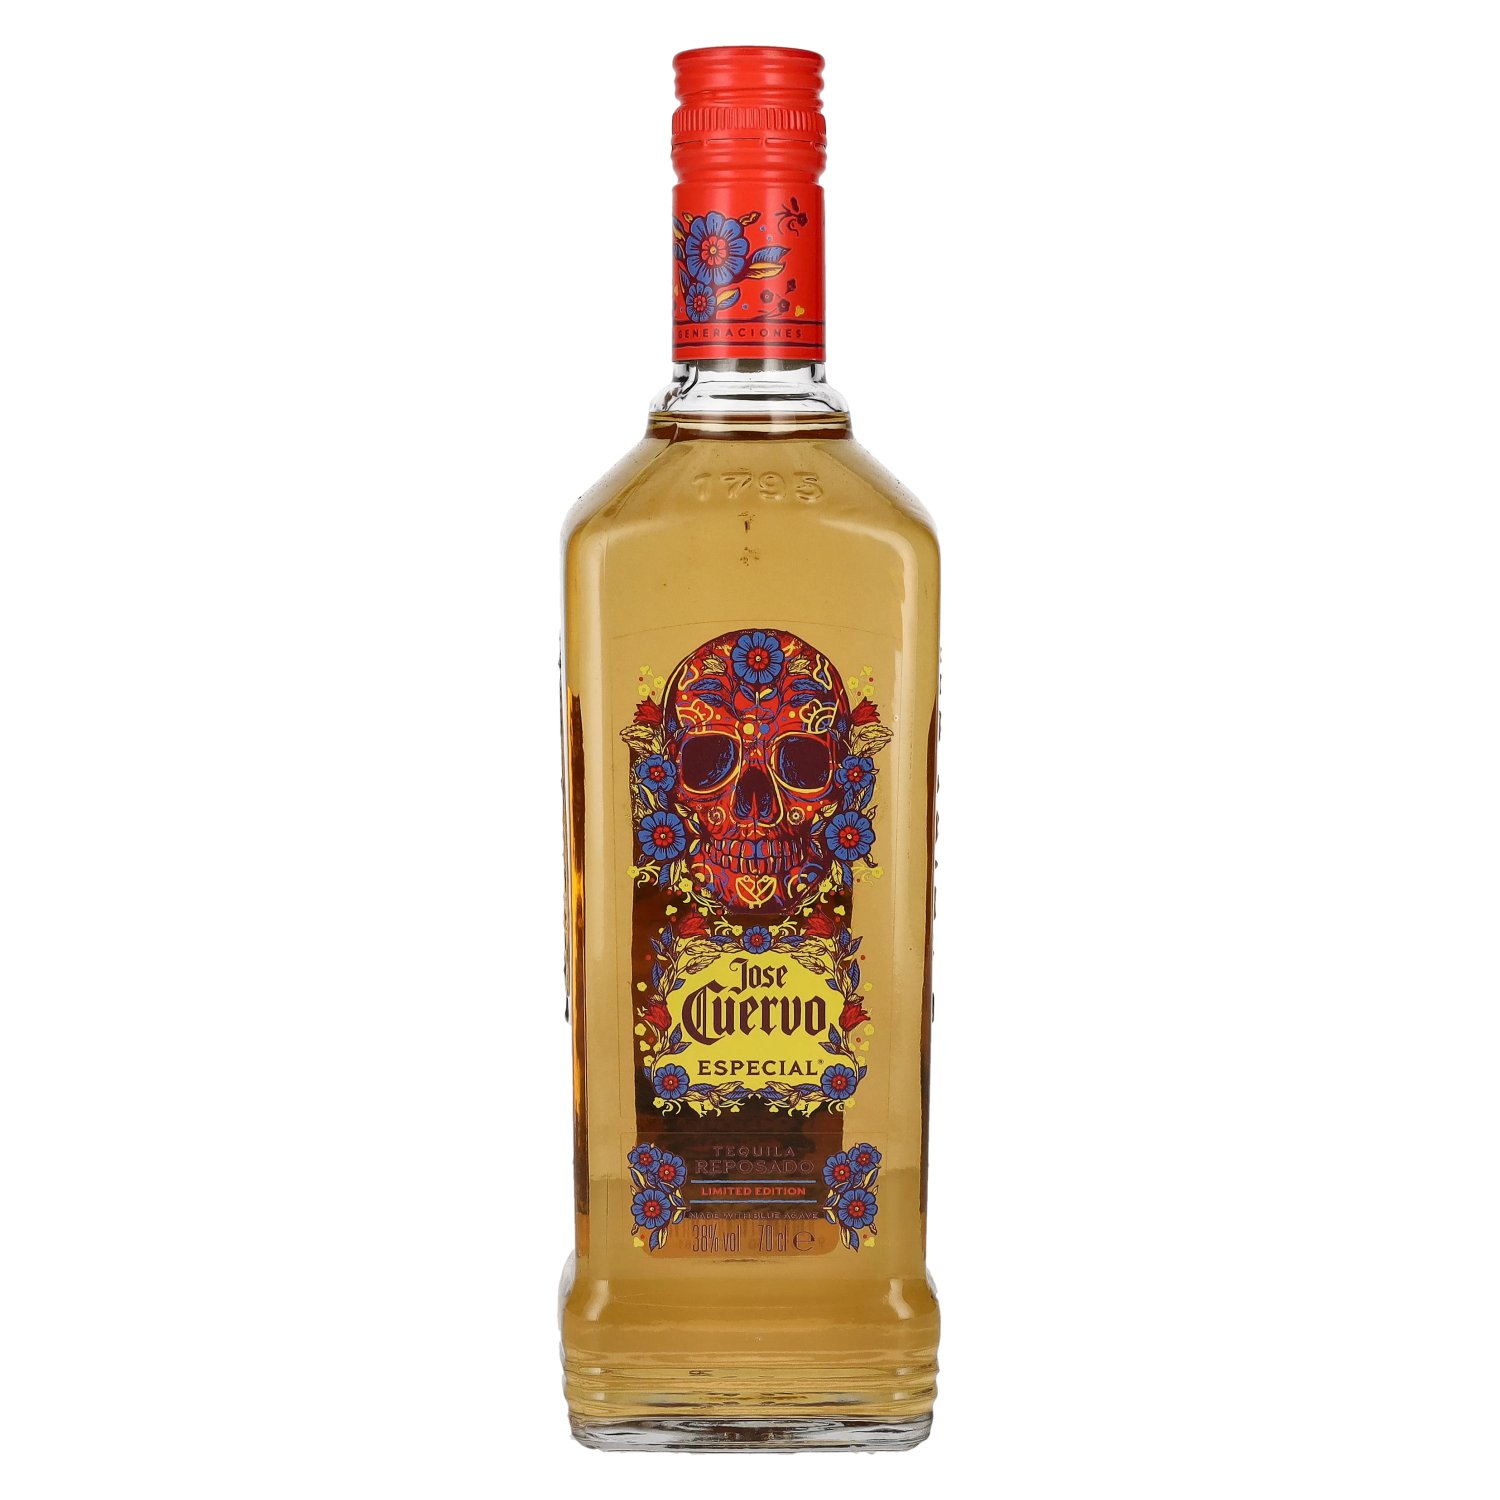 the 0,7l Edition Tequila José Cuervo Day of Dead 38% Especial Limited Vol. Reposado